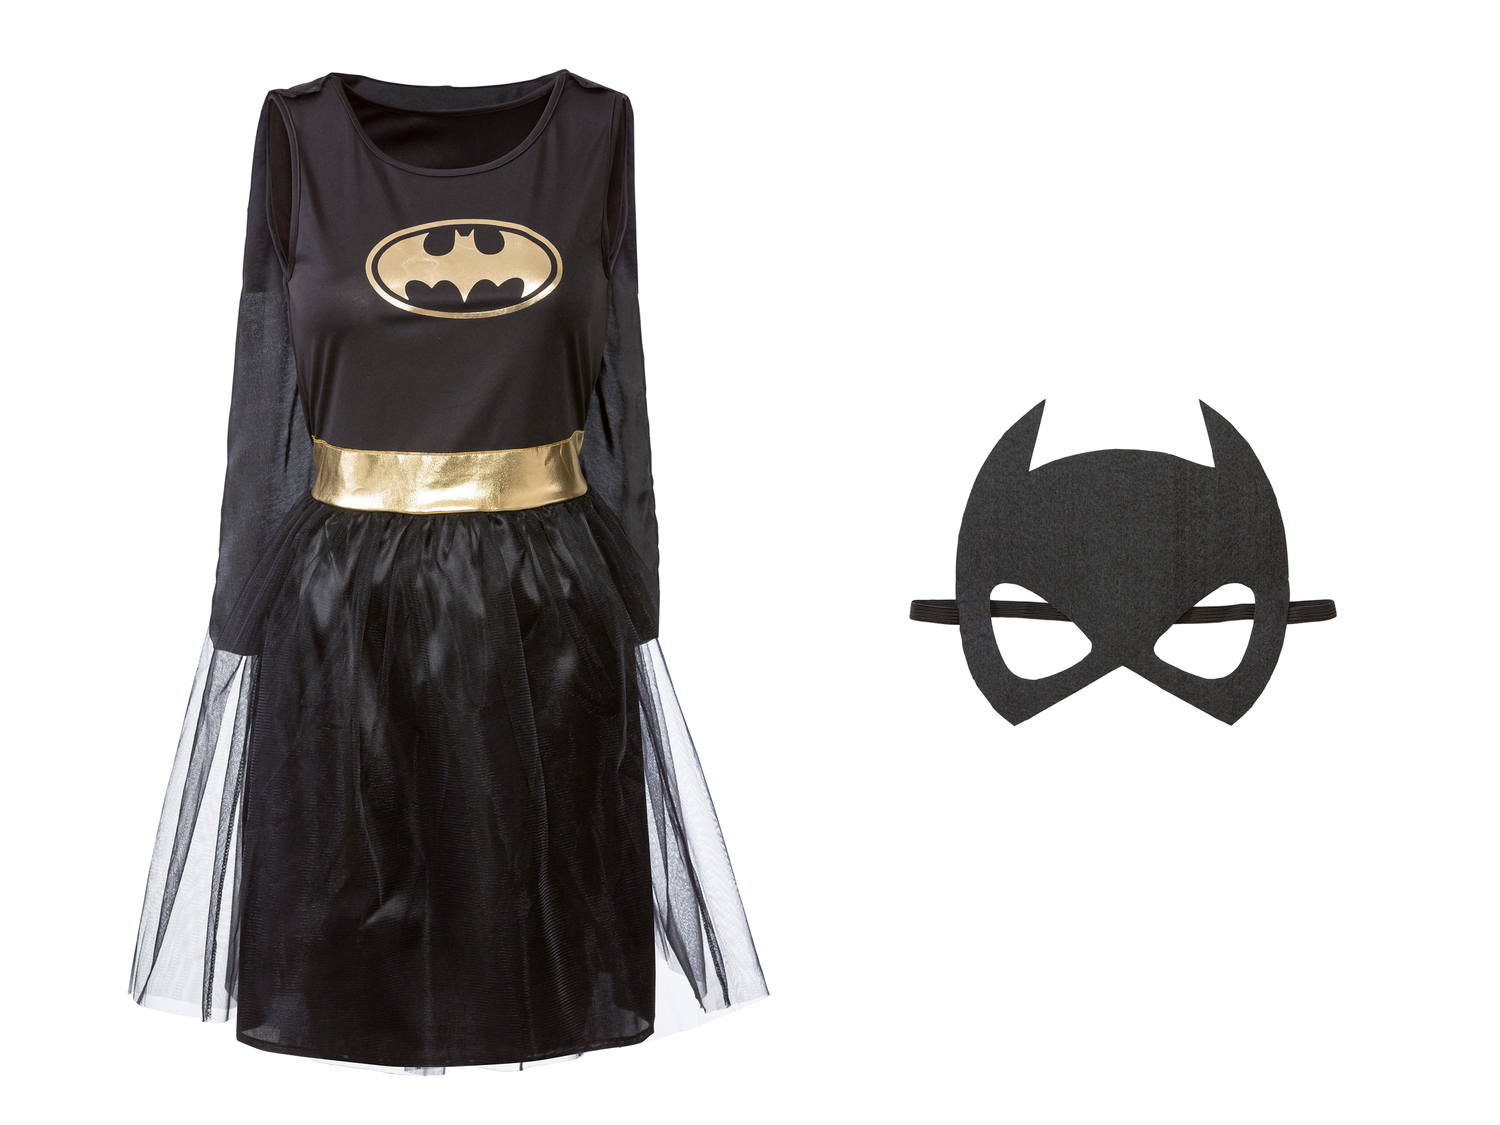 Costume di carnevale da donna Capitan Marvel, Batwoman, Harley Quinn , prezzo 14.99 ...